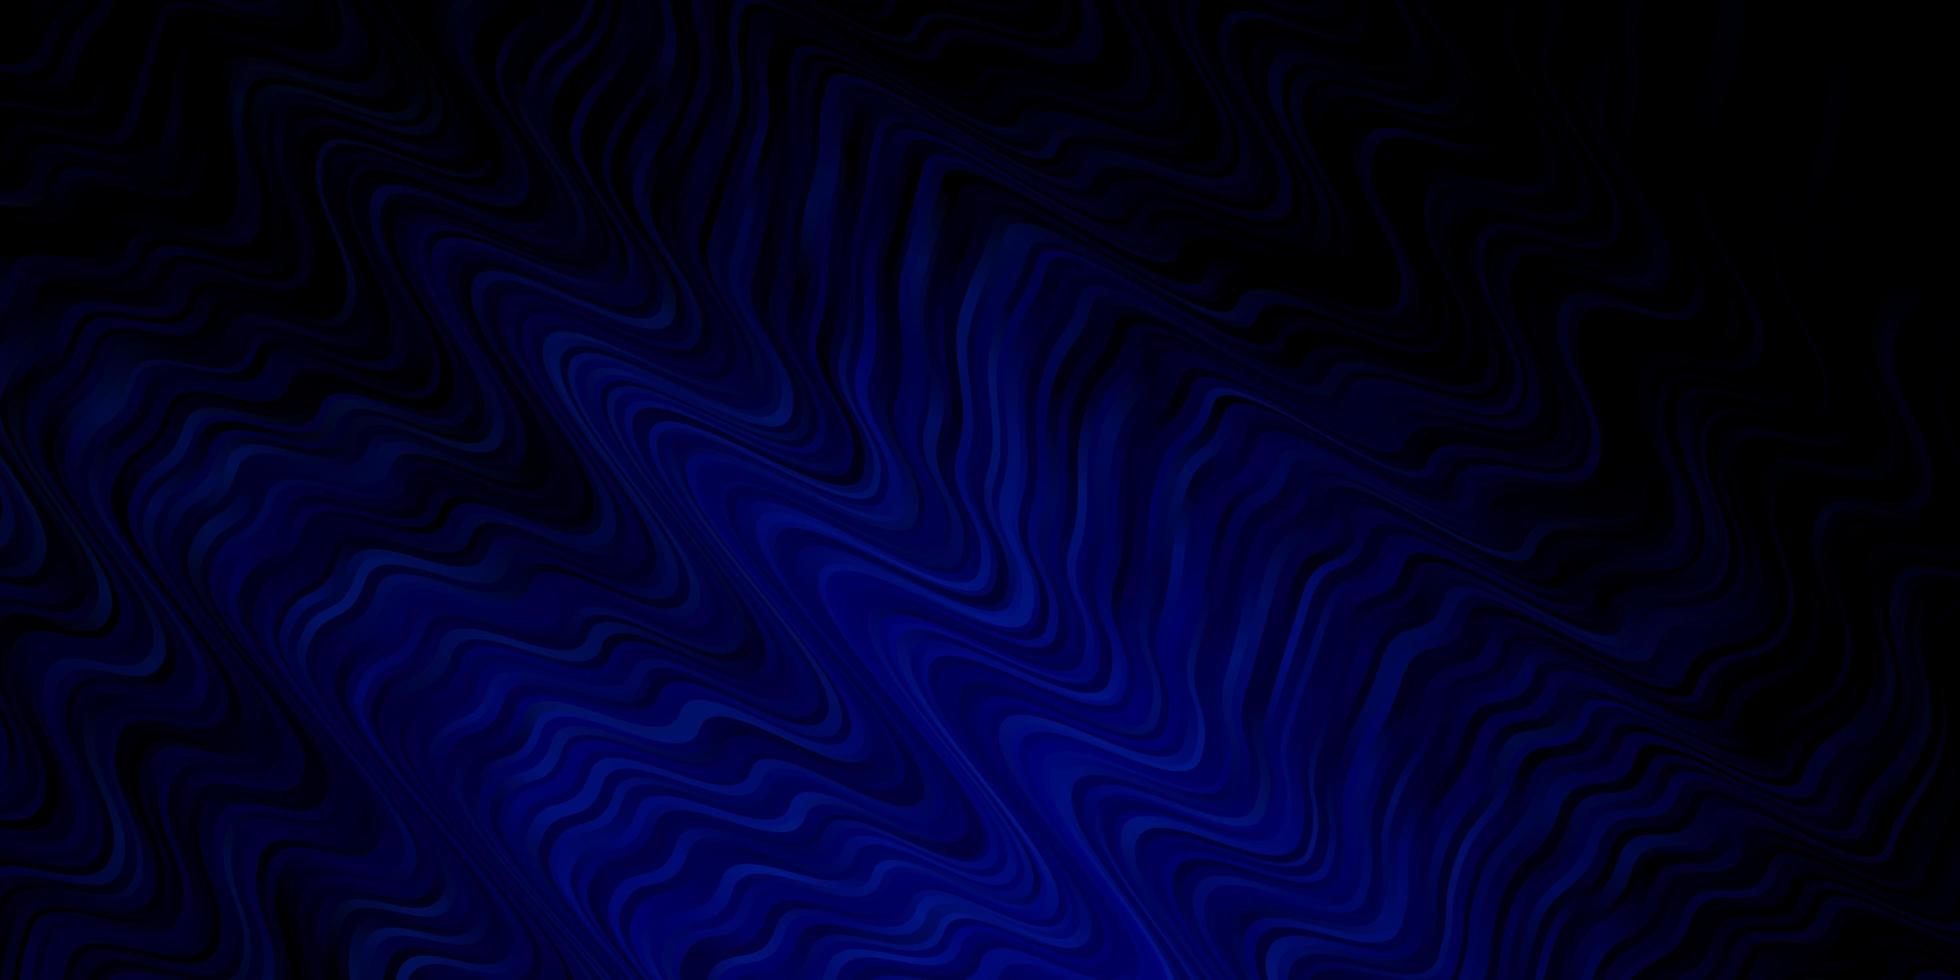 mörkblå vektormall med kurvor helt ny färgglad illustration med böjda linjer bästa design för din annonsaffischbanner vektor